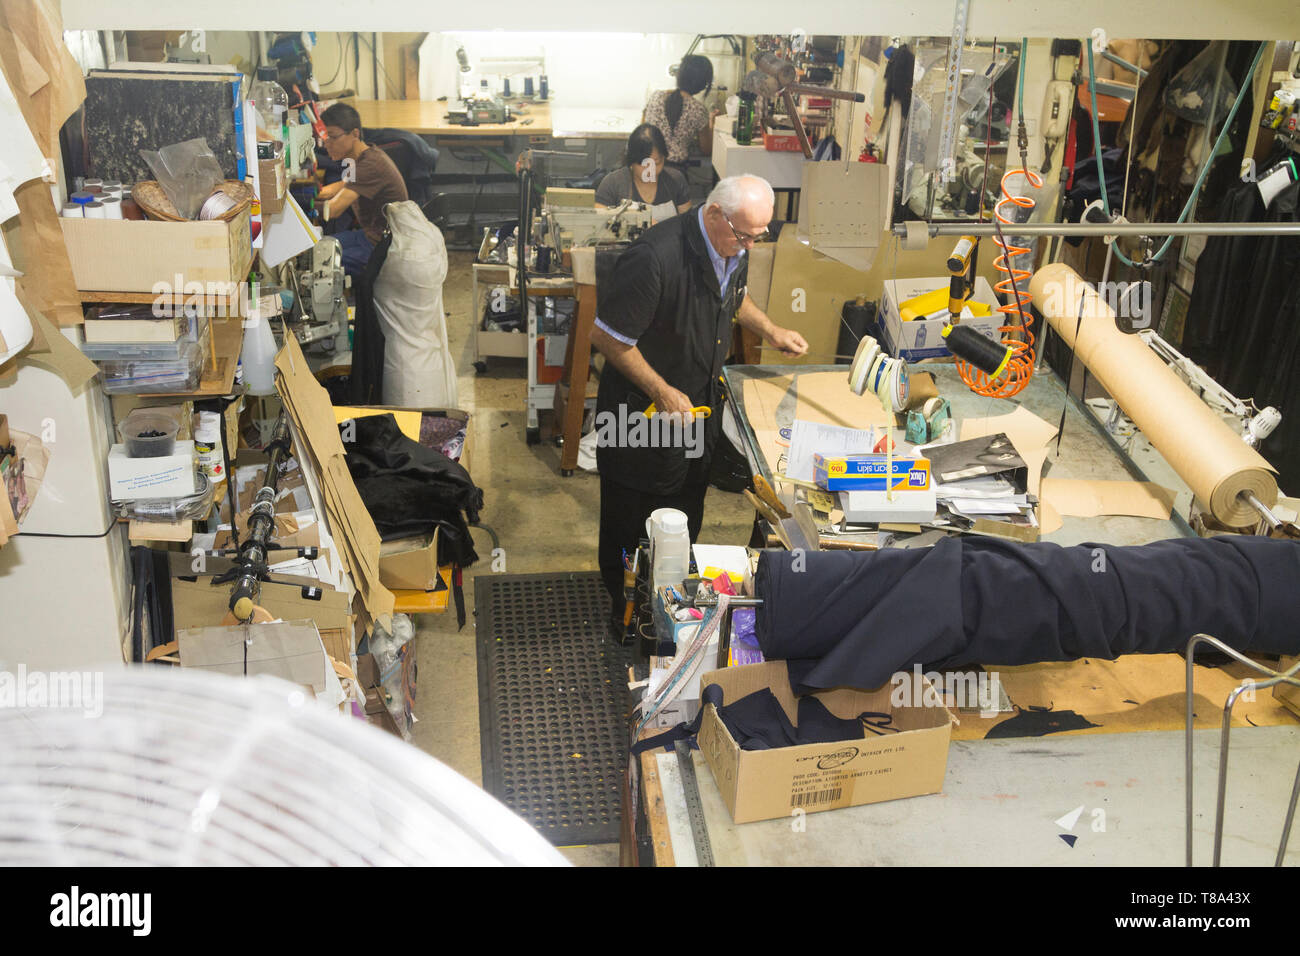 Perth, Western Australia, Australien - 17/01/2013: Menschen in einer Kleidung reparieren Unternehmen mit Leder arbeiten, Sinikka Maßgeschneiderte Kleider, Änderung Stockfoto